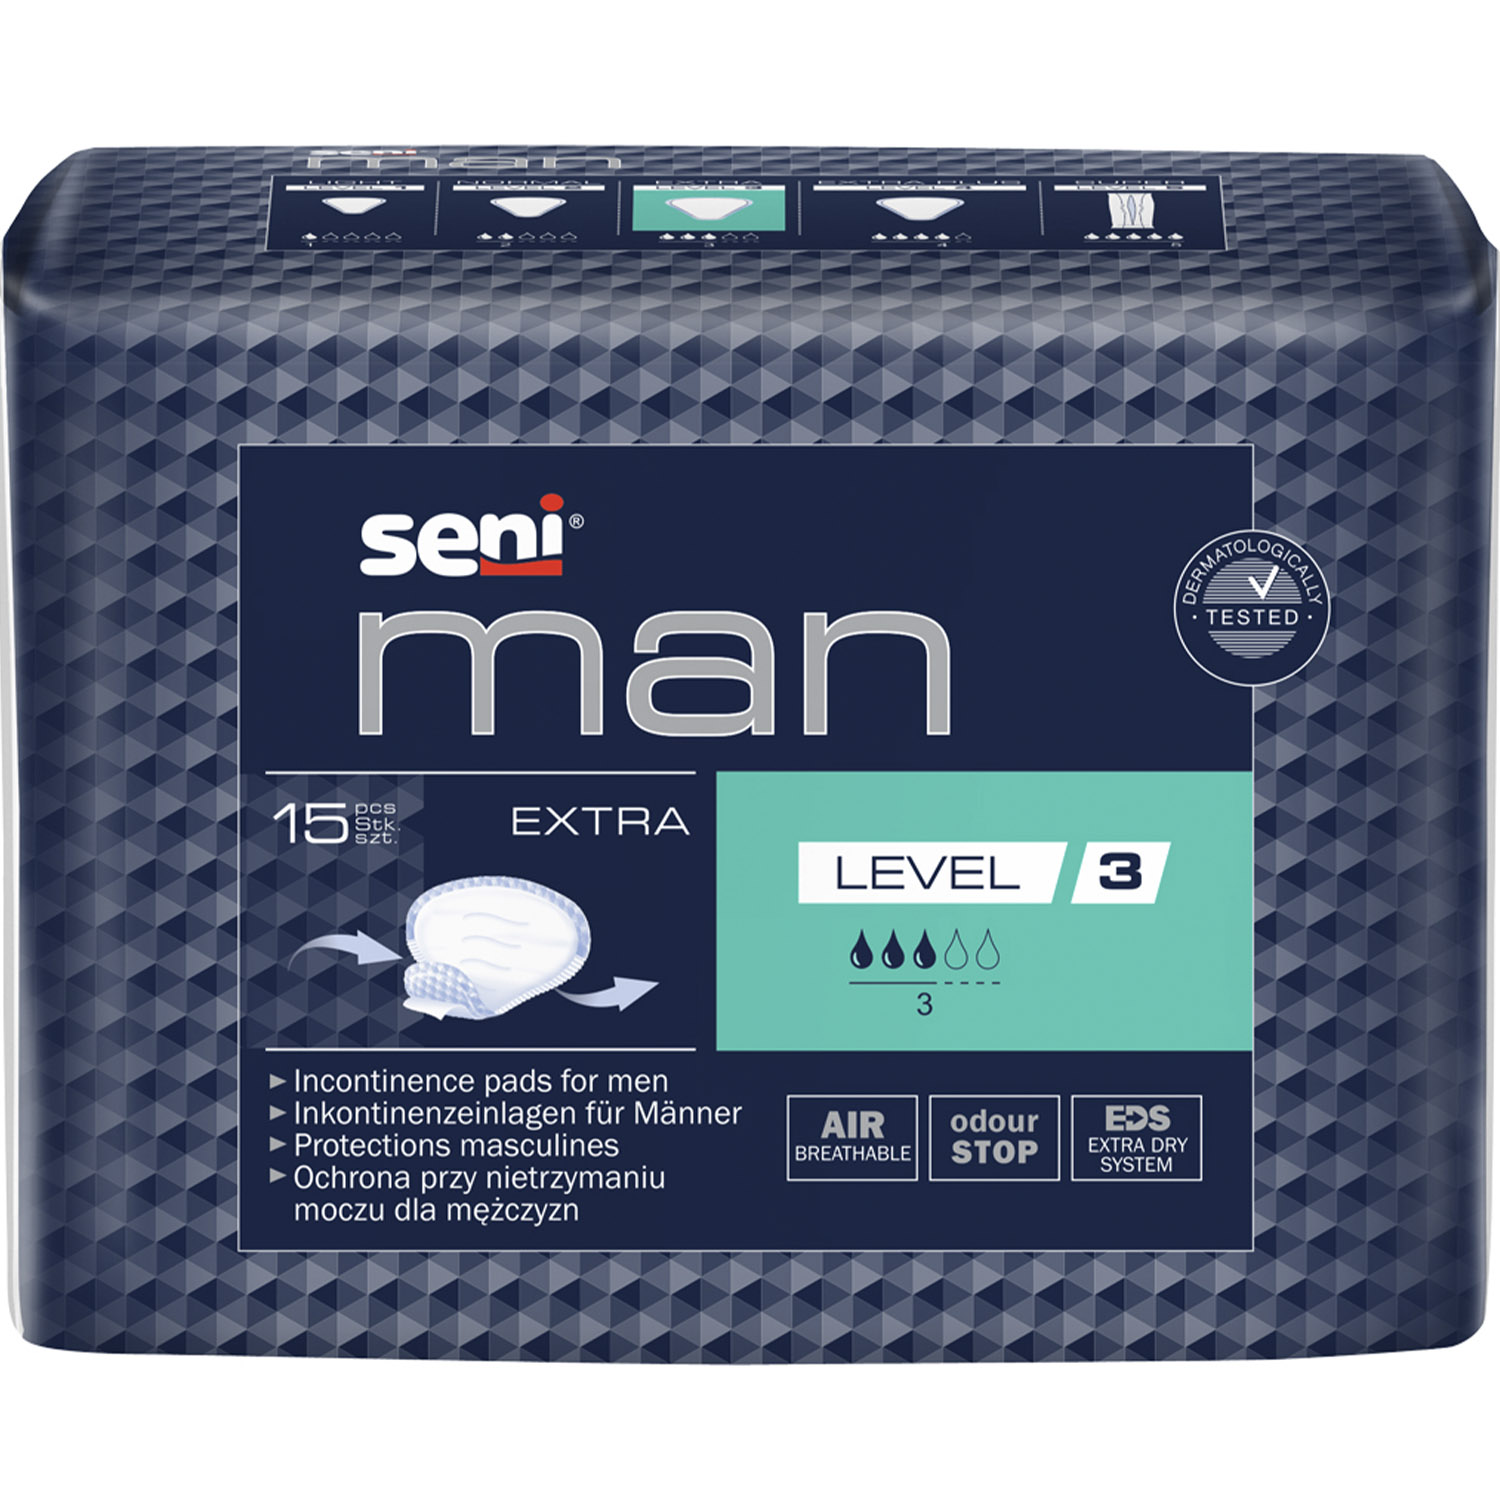 Прокладки урологические Seni Man Extra Level 3 для мужчин 15 шт. - фото 1